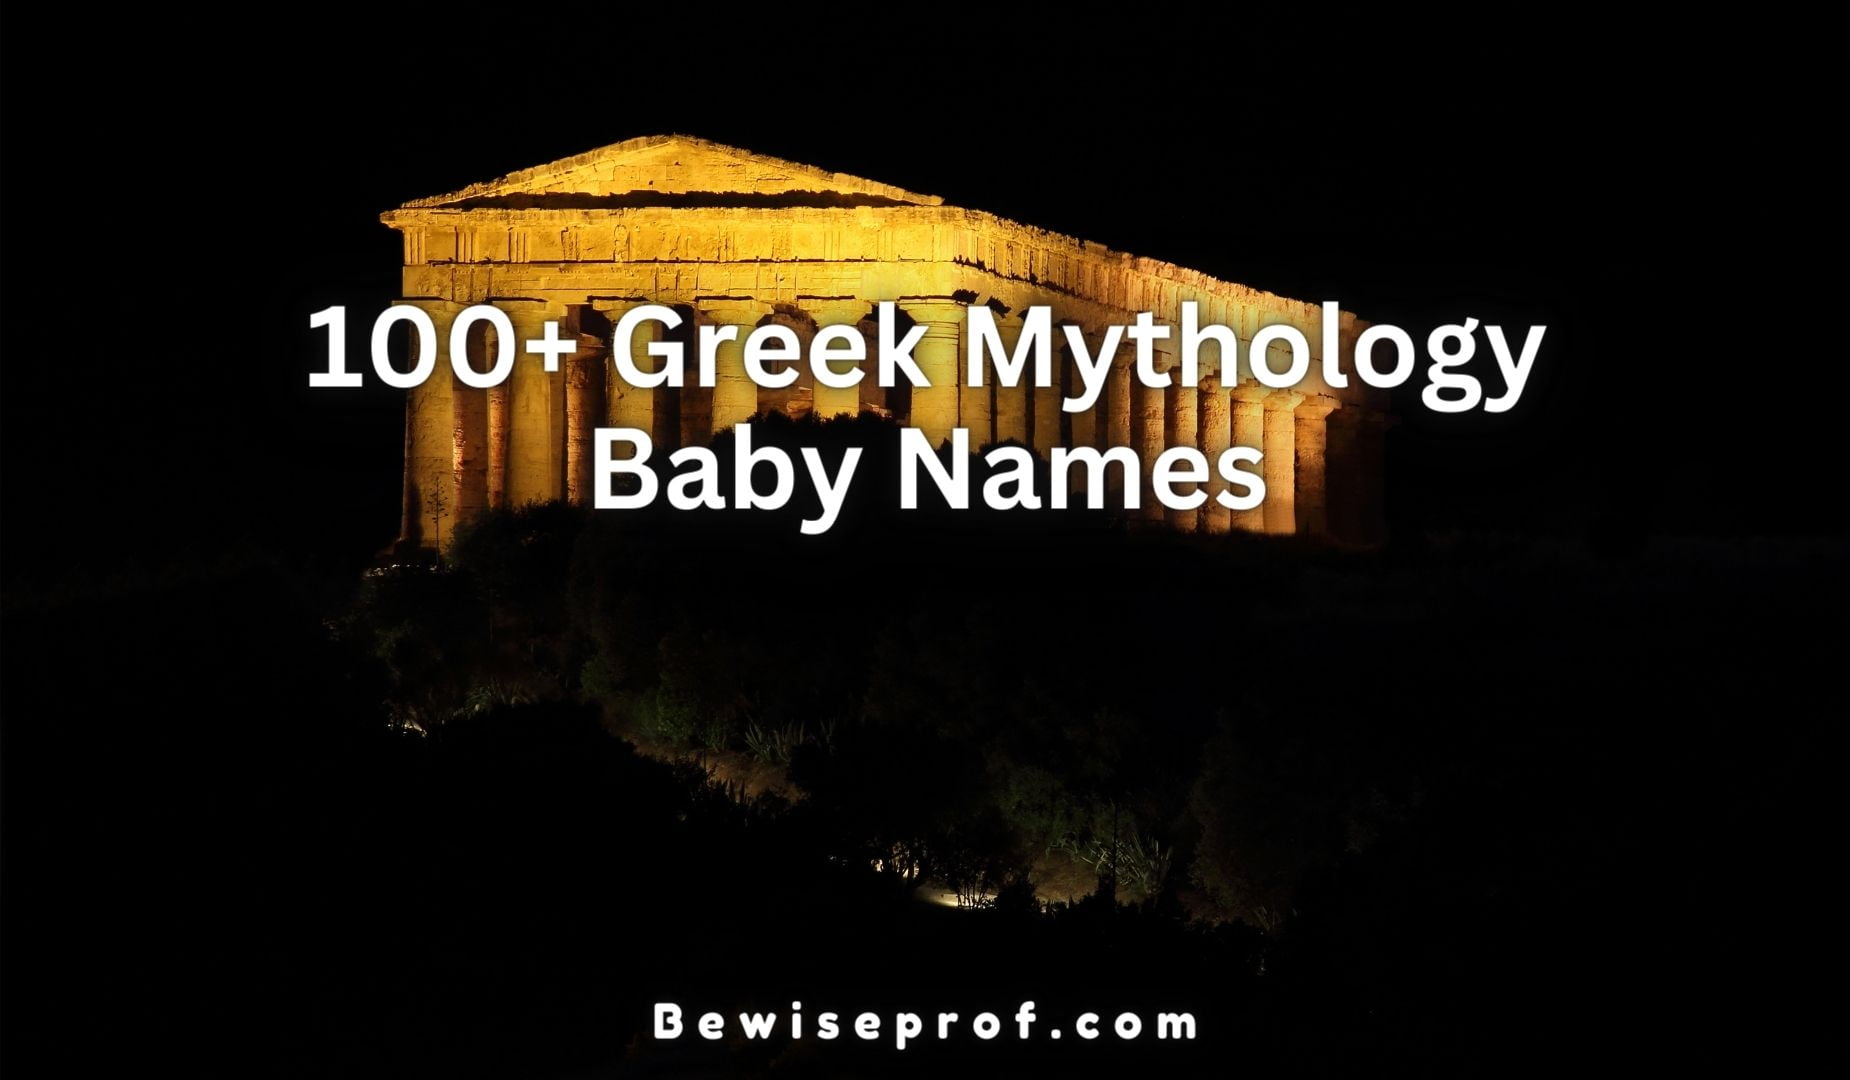 100+ Greek Mythology Baby Names